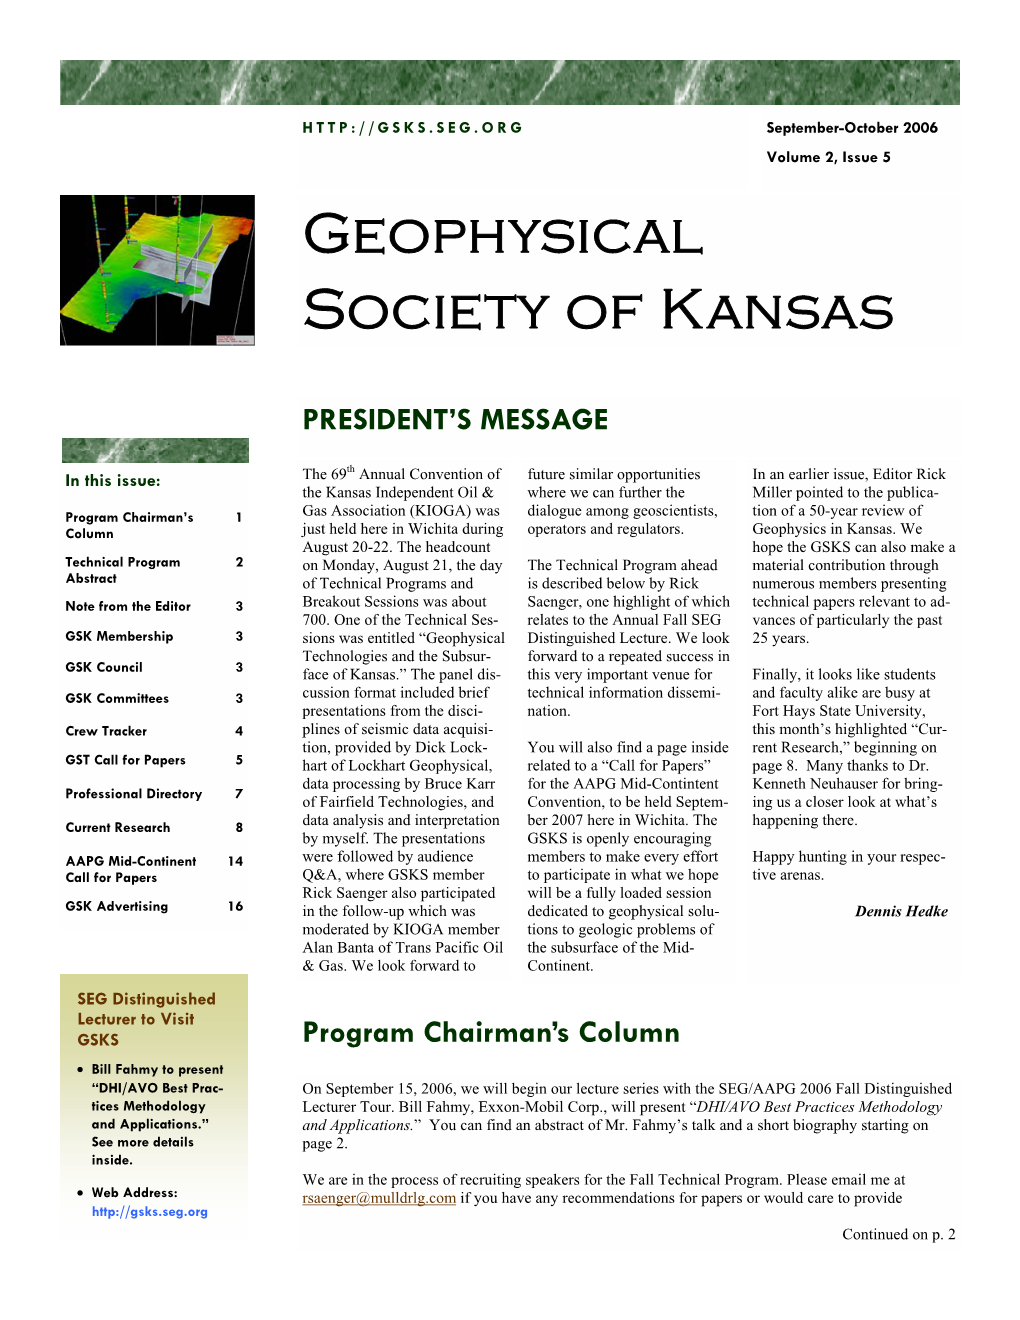 September-October 2006 Volume 2, Issue 5 Geophysical Society of Kansas